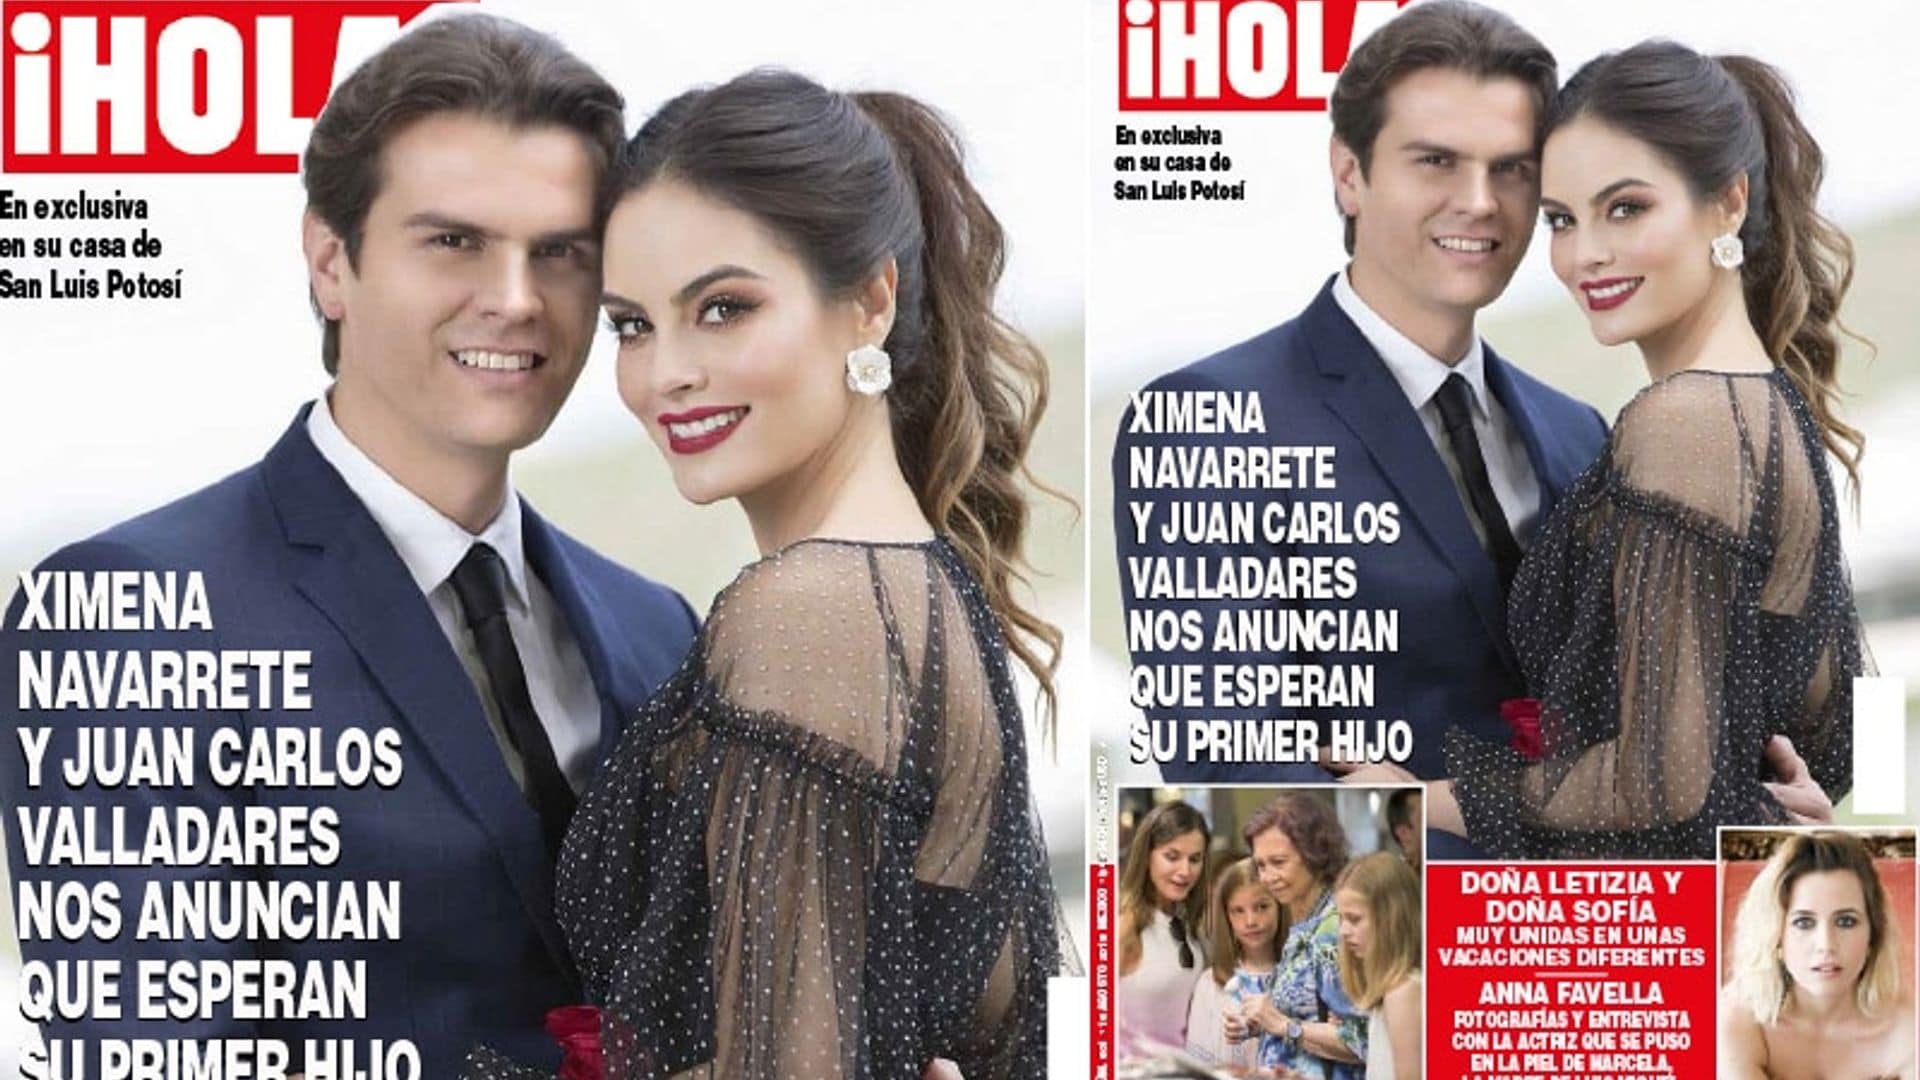 EXCLUSIVA ¡HOLA! Ximena Navarrete y Juan Carlos Valladares nos anuncian que esperan su primer hijo